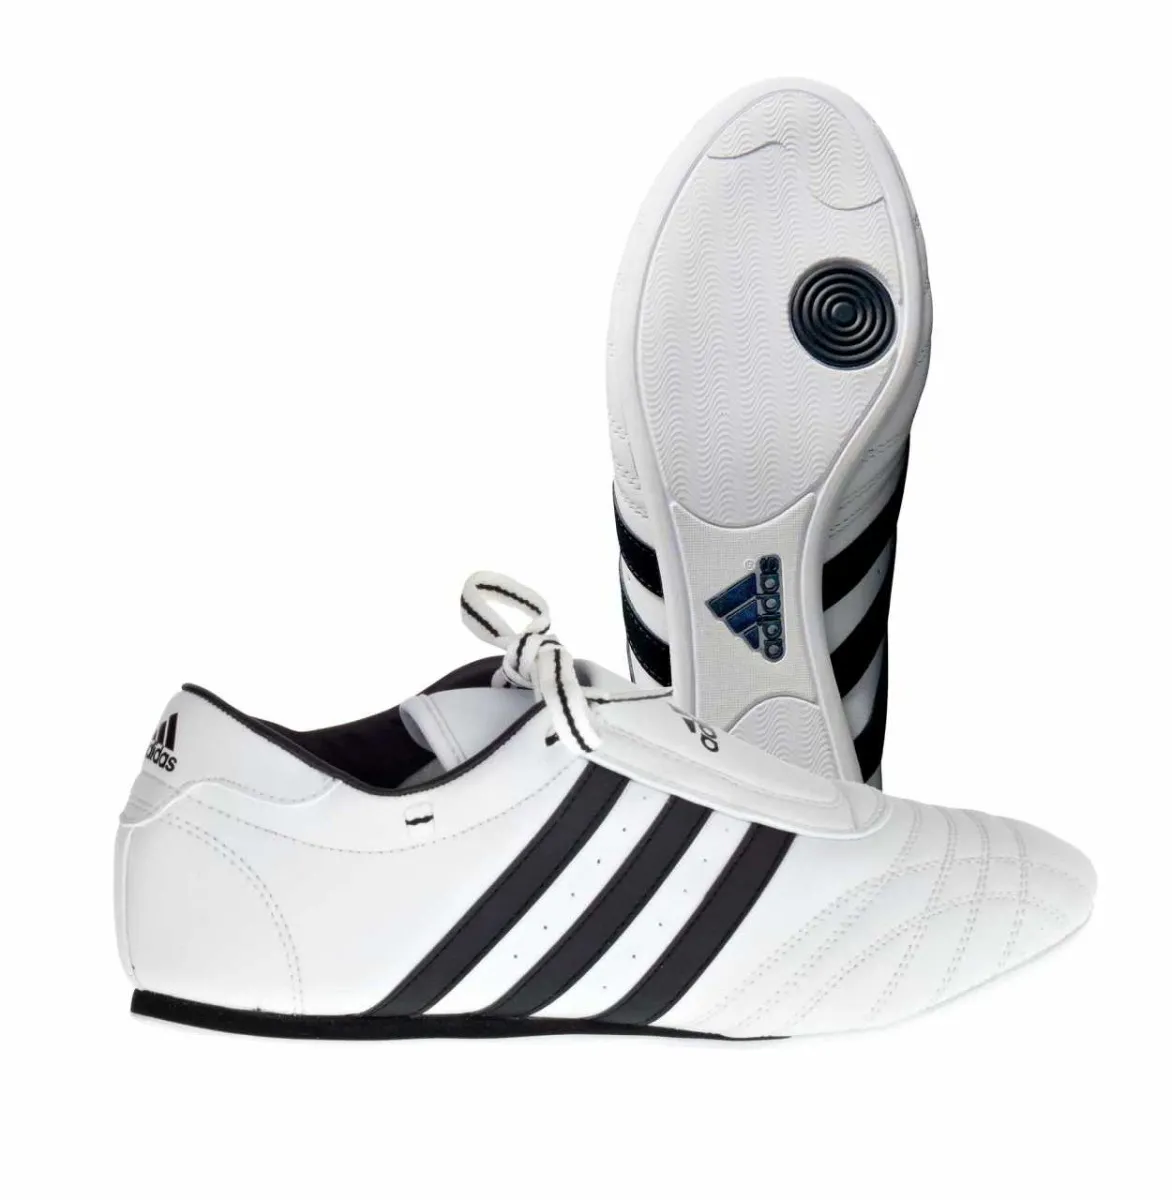 Zapatillas Adidas SM II blancas